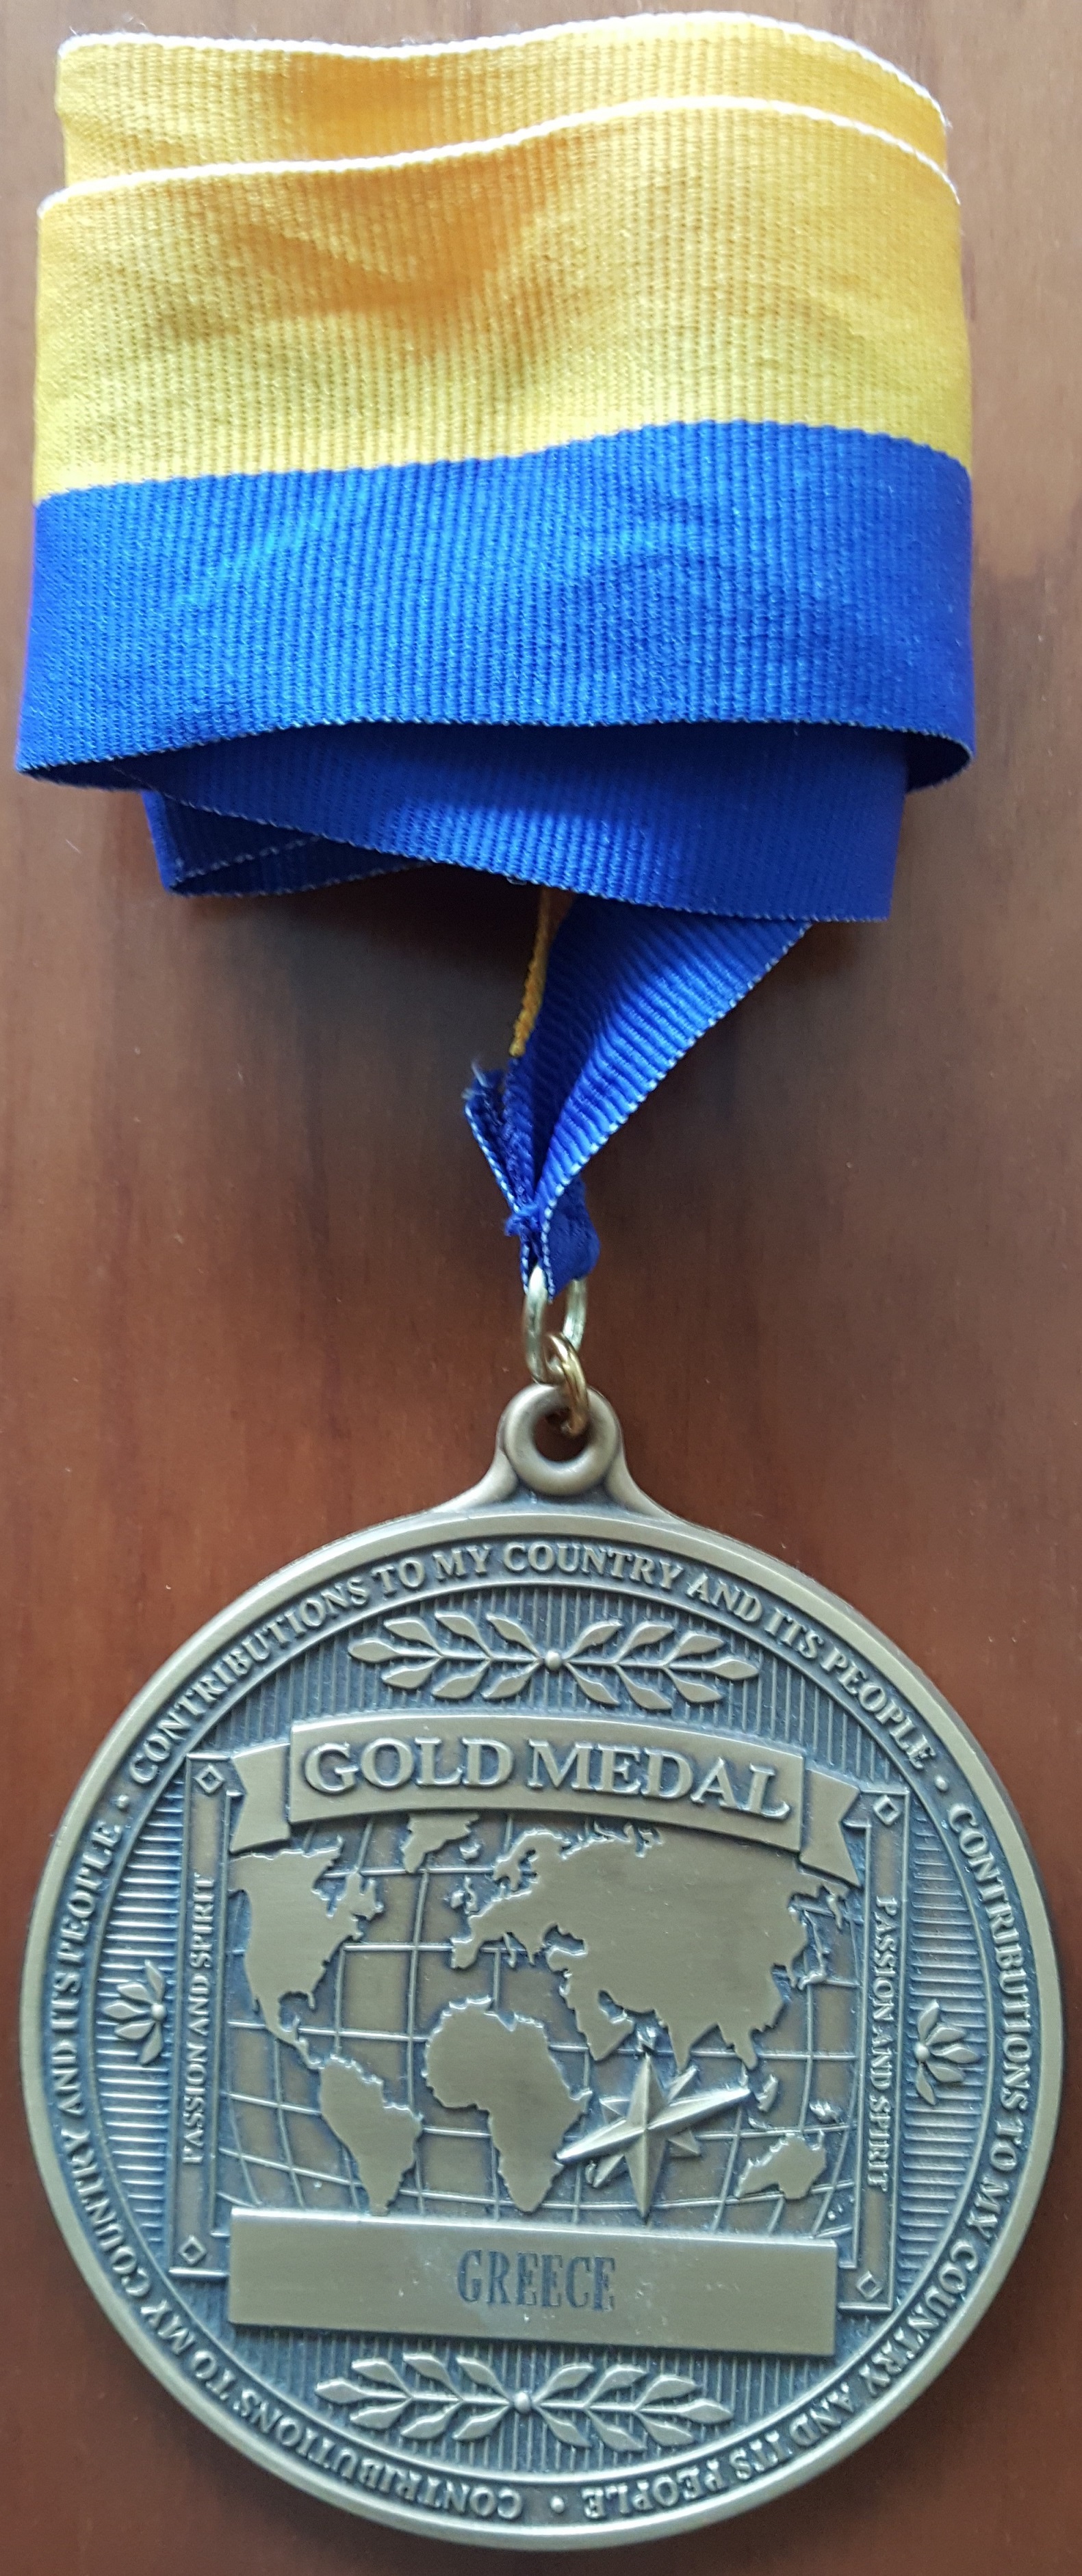 ΒΕΦΑ ΑΛΕΞΙΑΔΟΥ Gold Medal for Greece vefaalexiadou cookbooks & blog vefaalexiadou.gr/